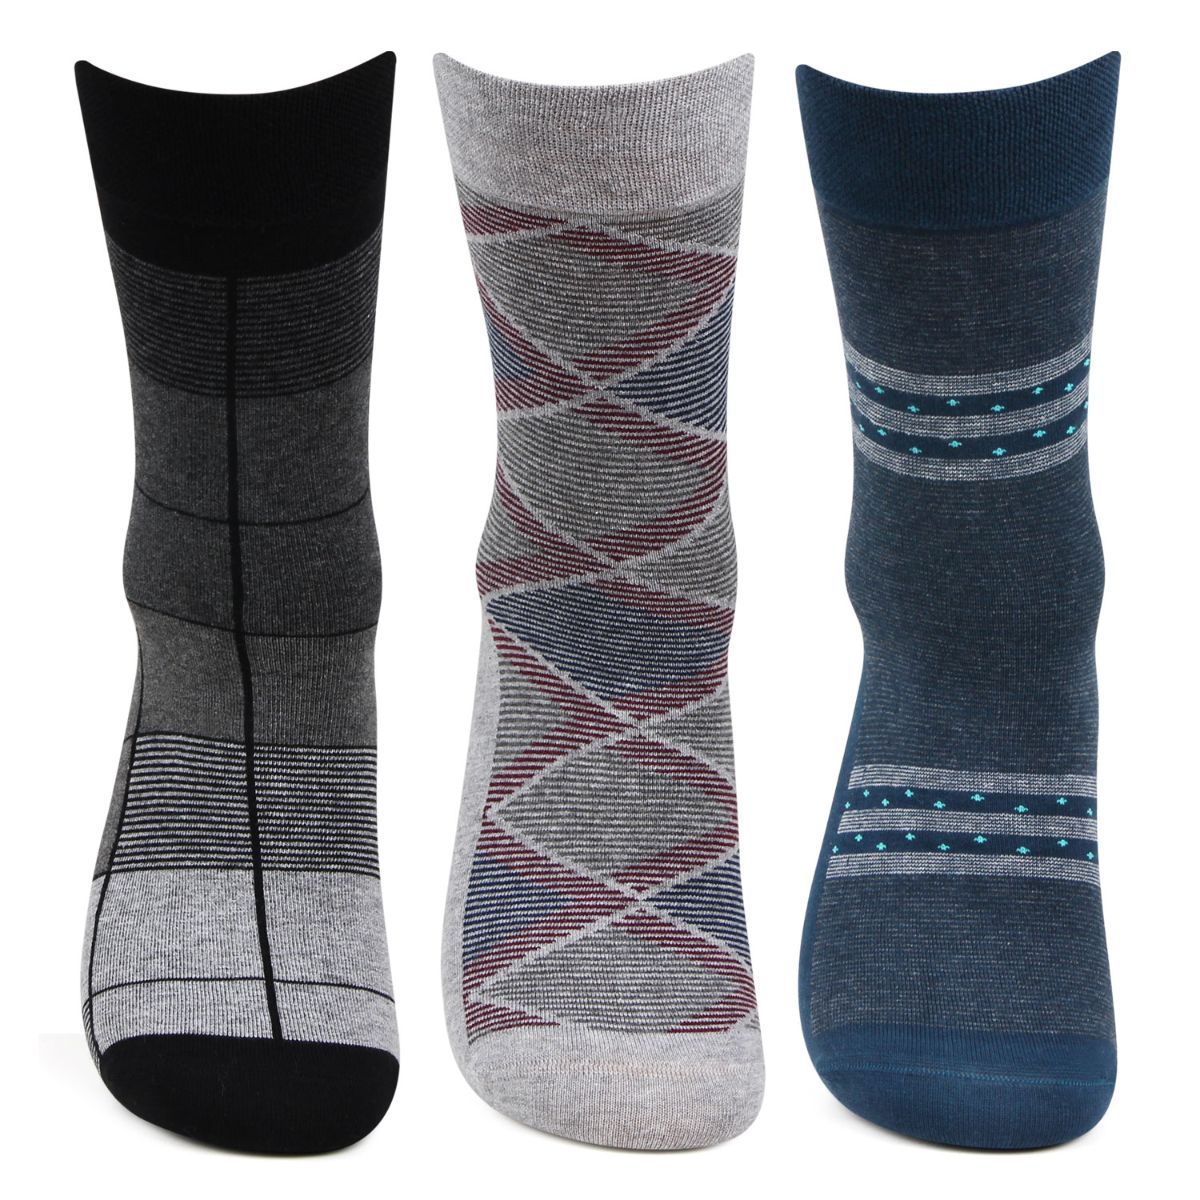 Bonjour Men's Formal Full Length Business/office Socks-pack Of 3 - Multi-Color (Free Size)